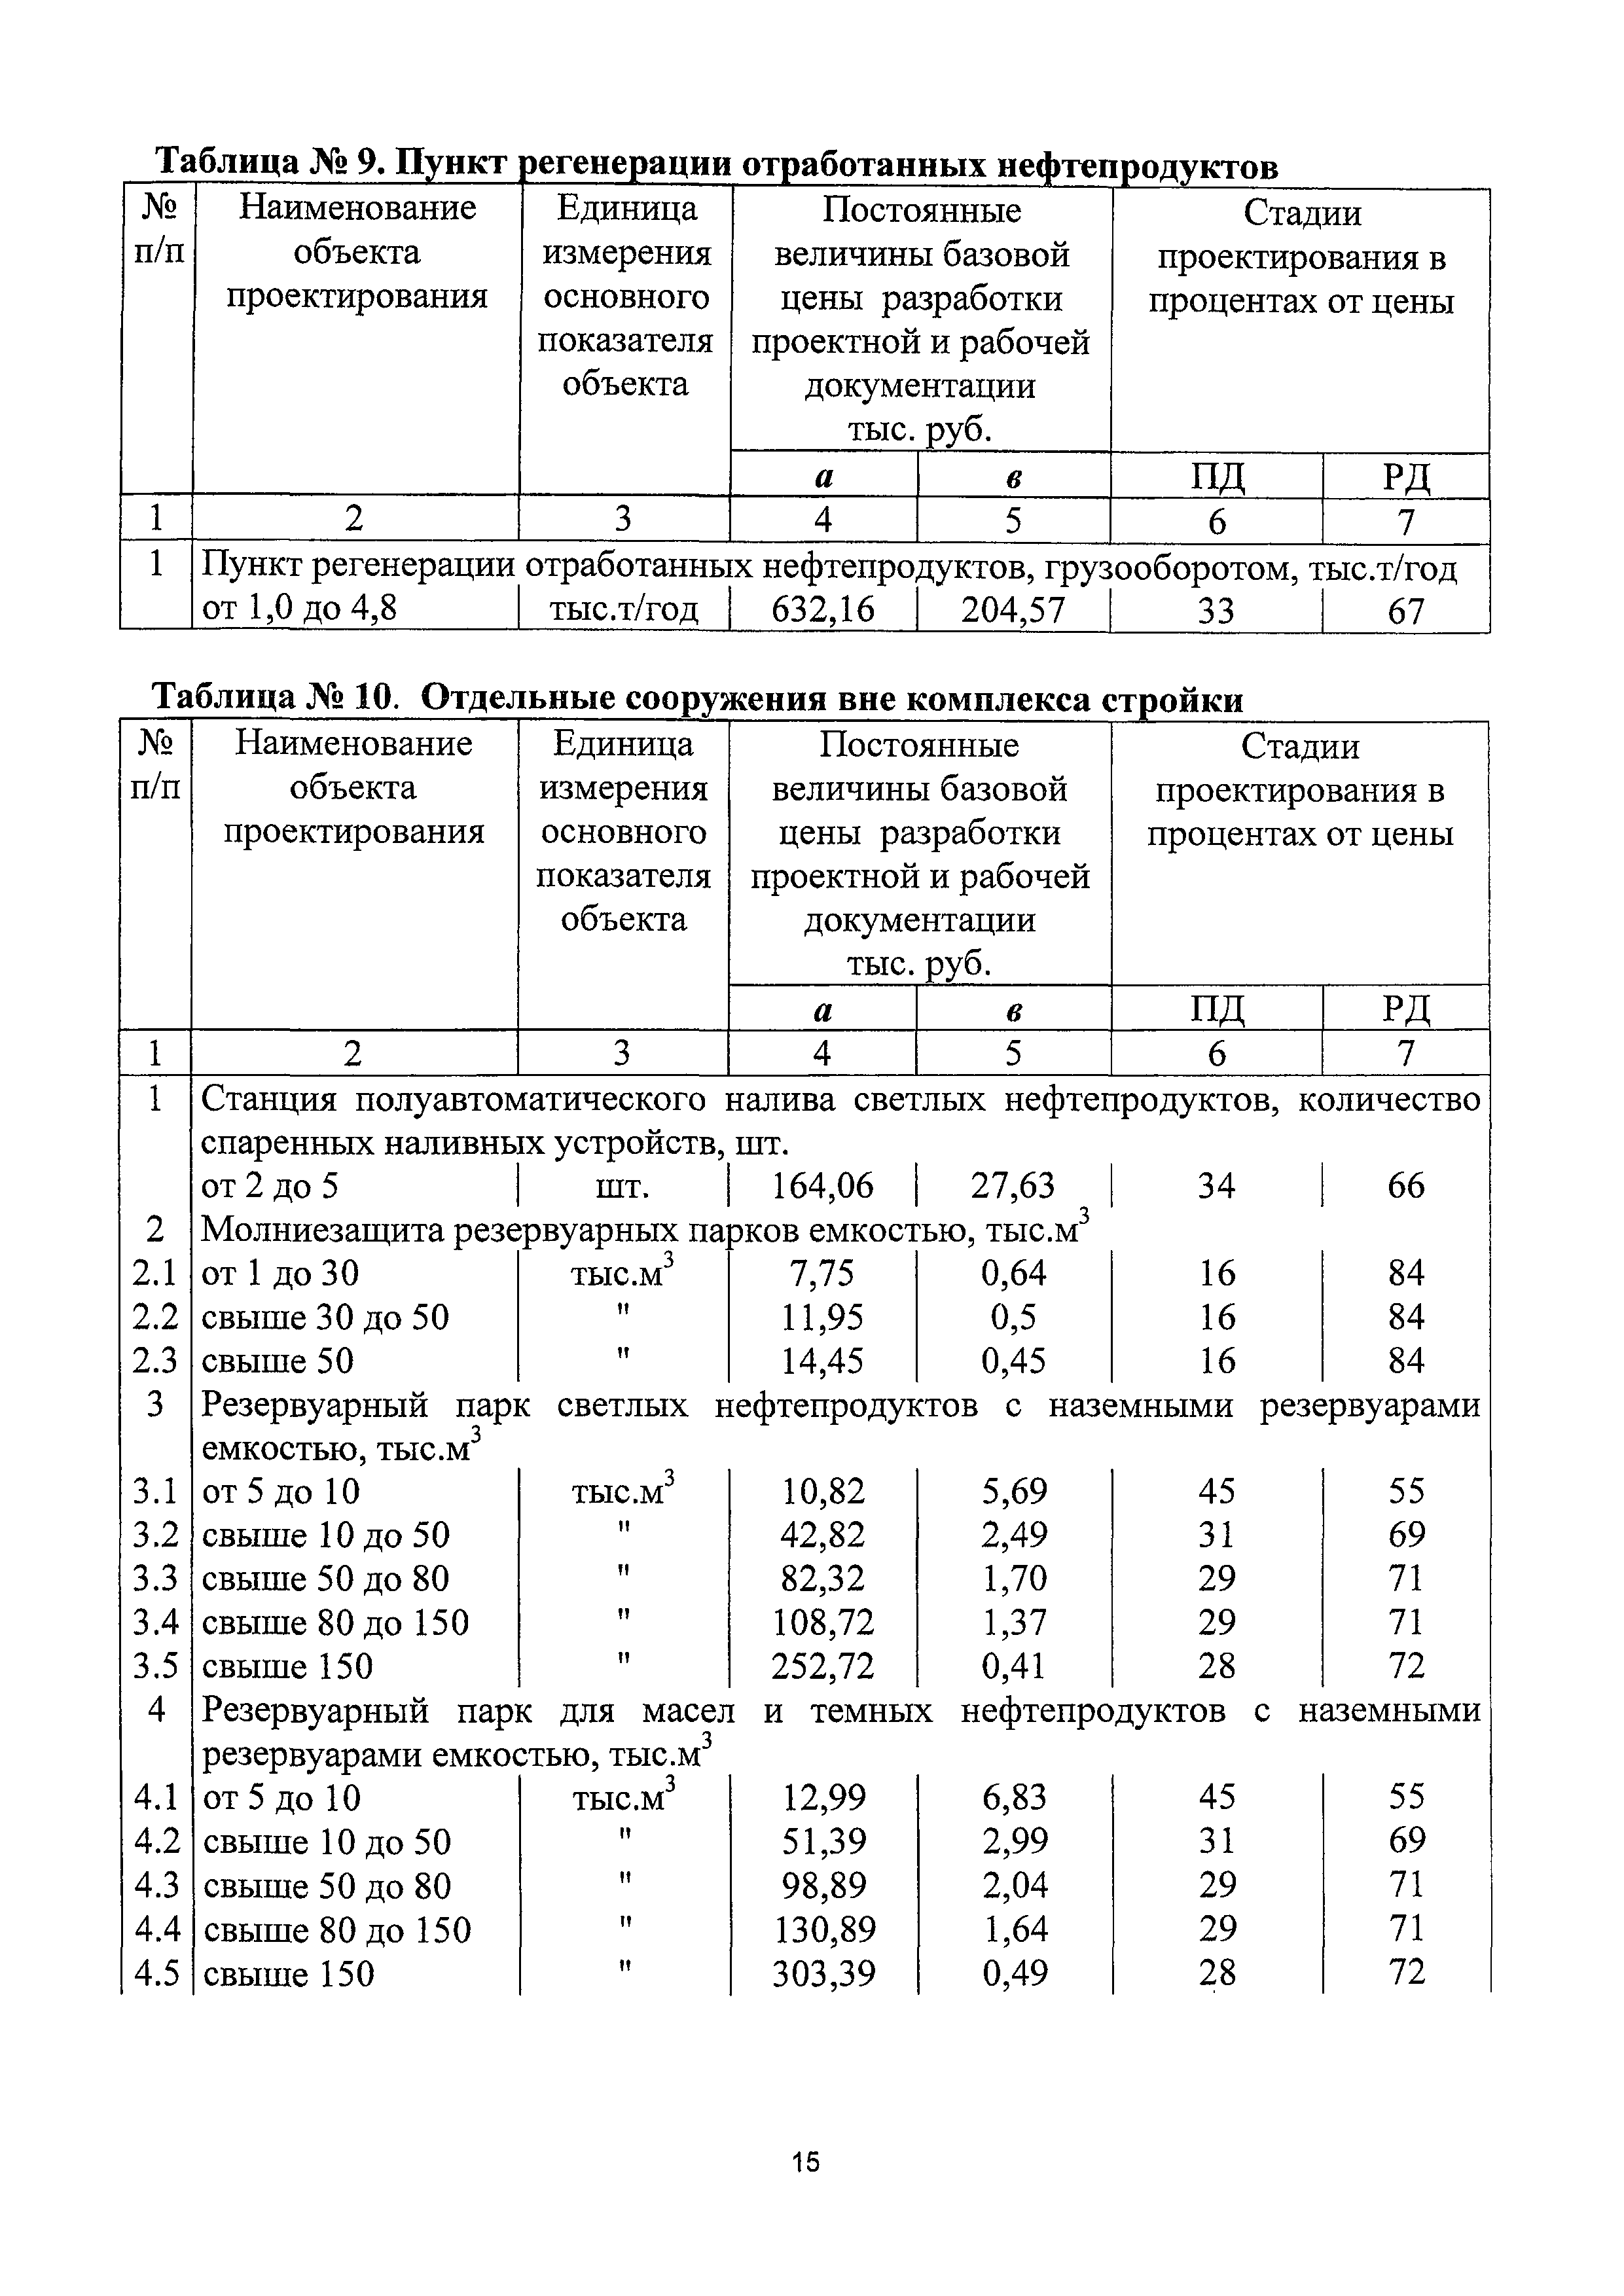 СБЦП 81-2001-19